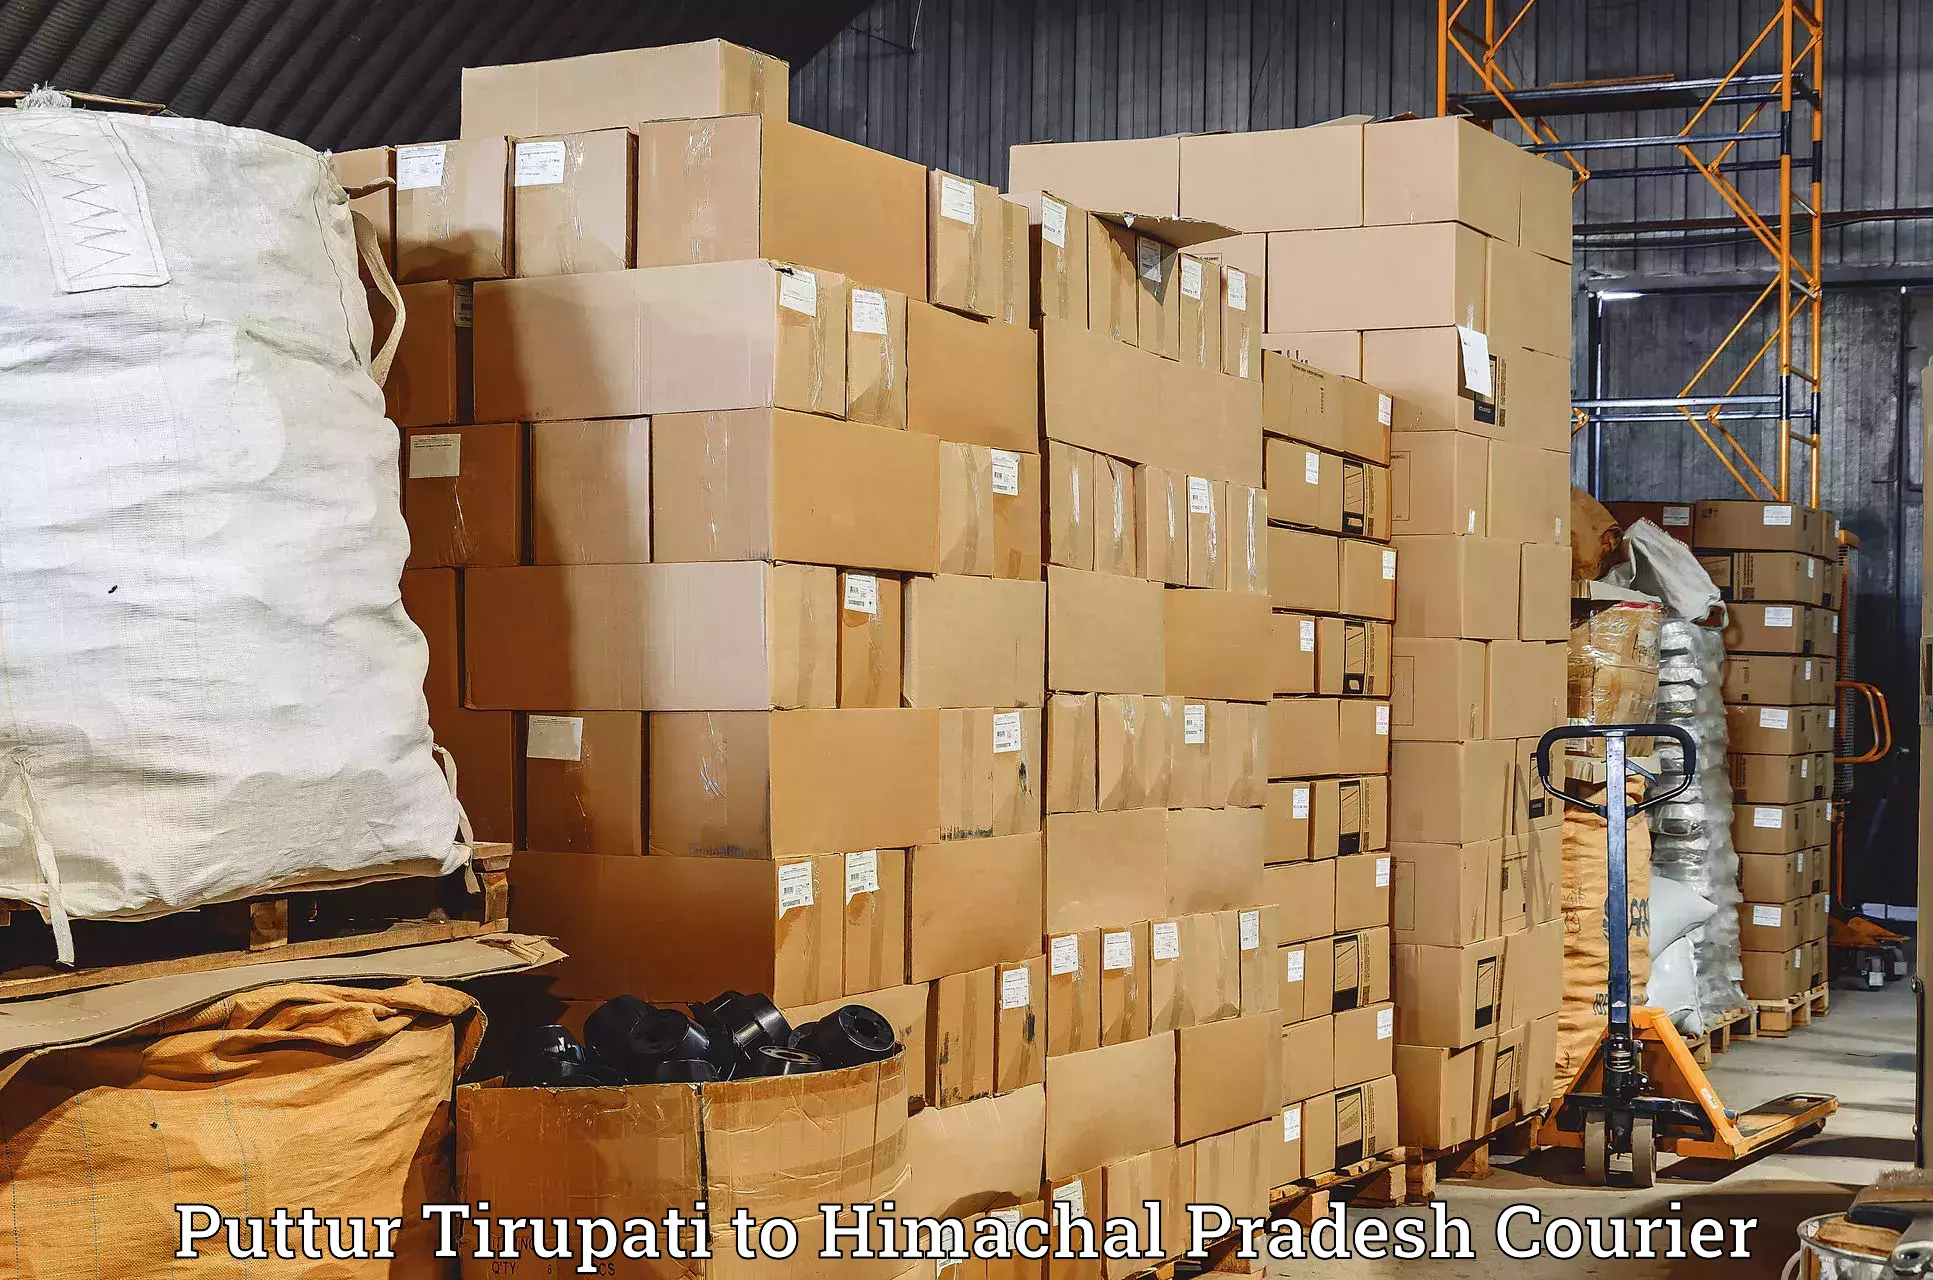 Individual parcel service in Puttur Tirupati to Nirmand